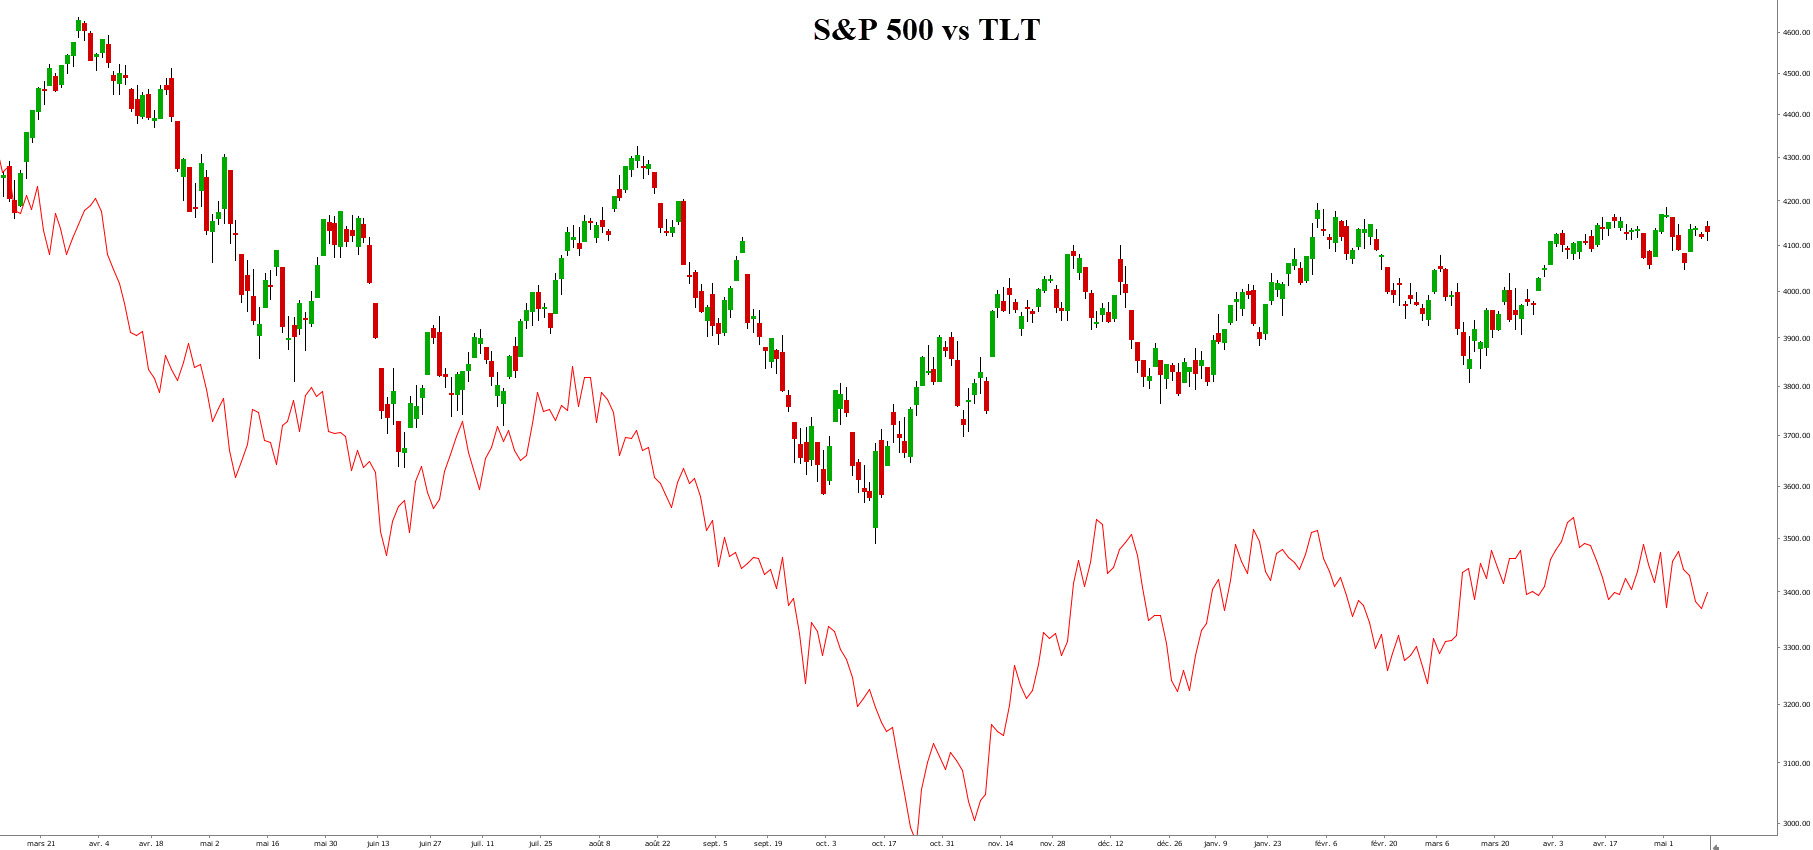 S&P 500 vs TLT daily